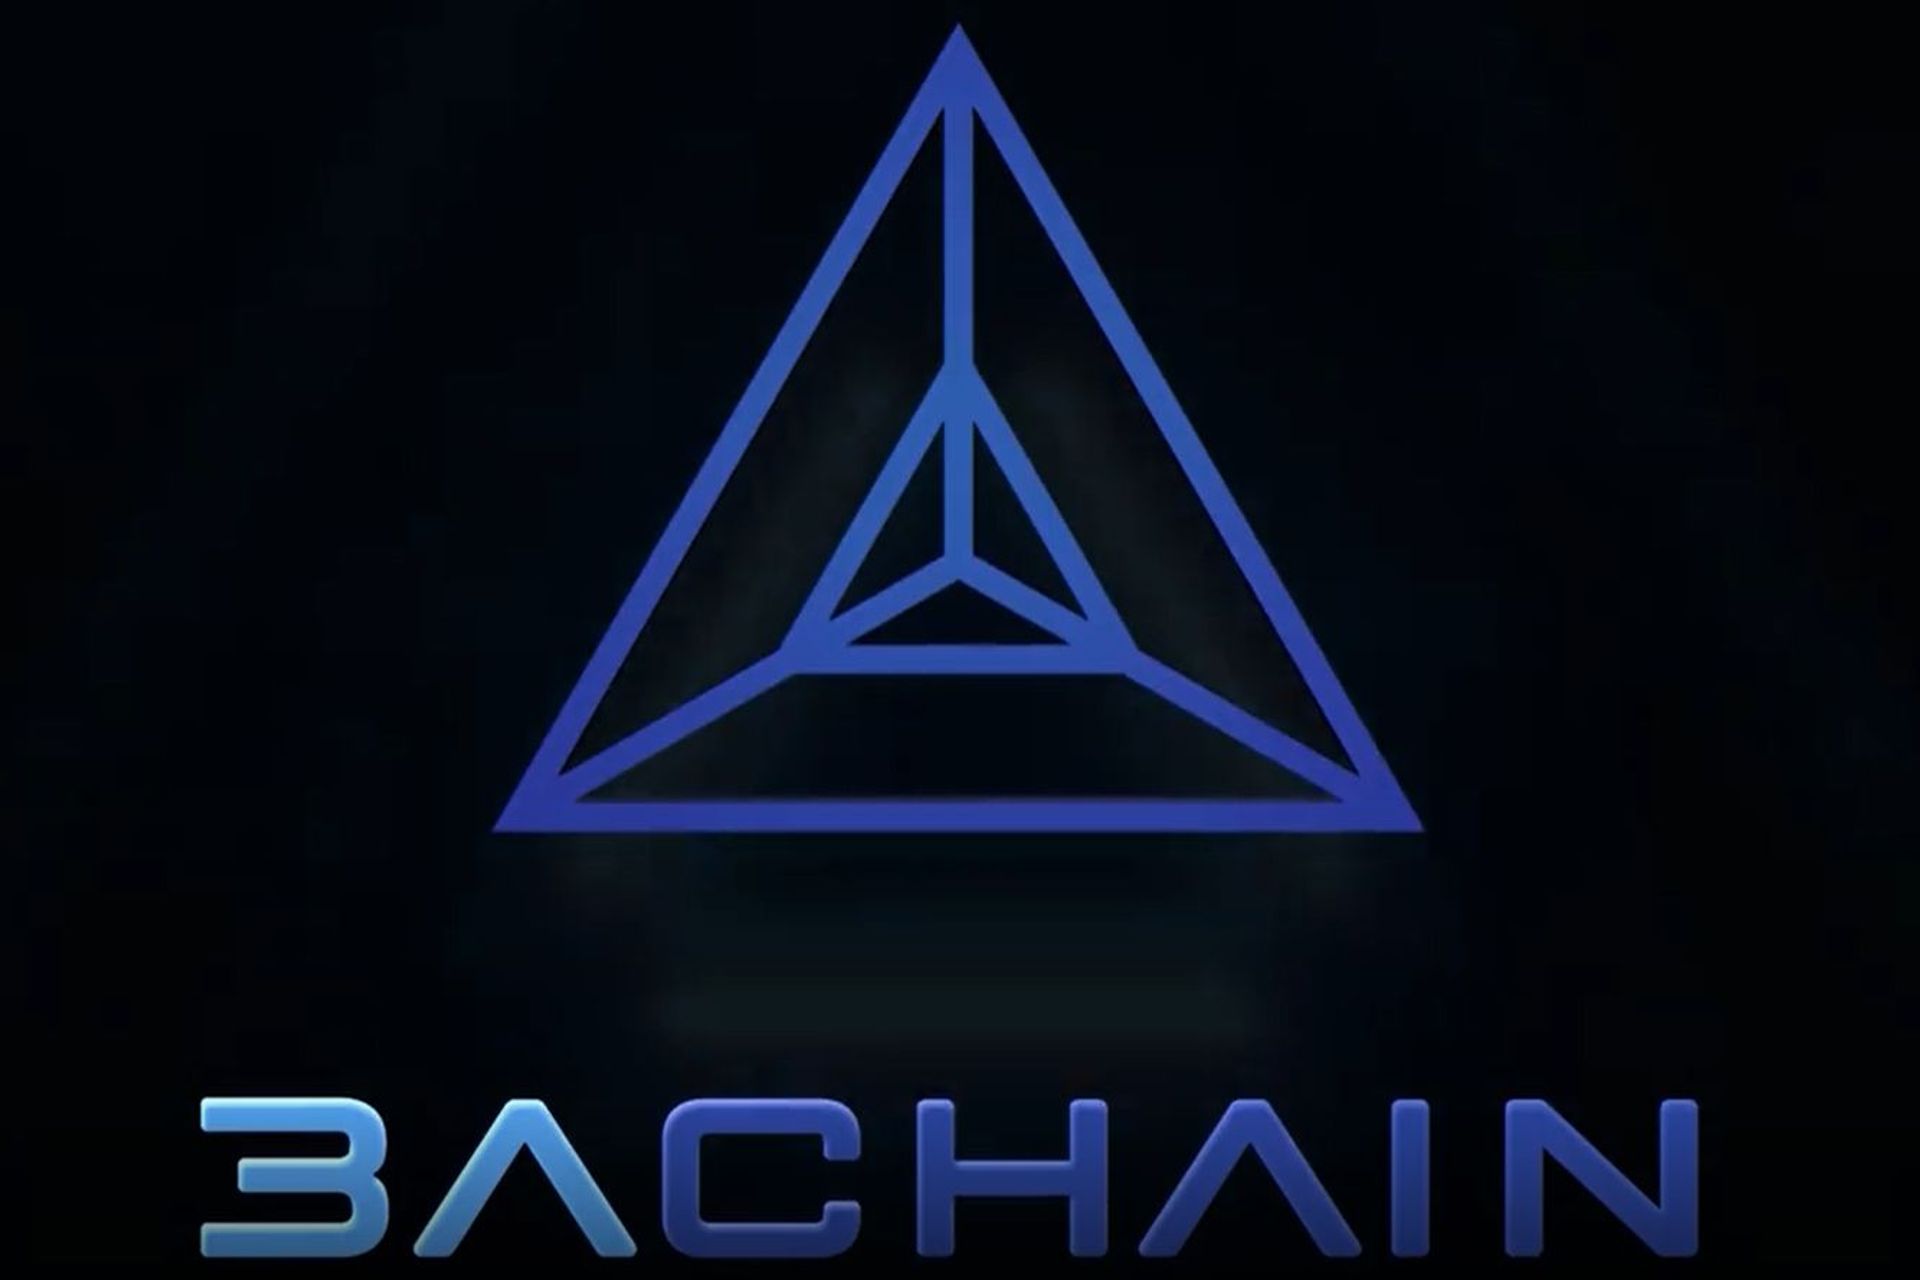 Logotipi i blockchain A3chain i lançuar nga Qyteti i Luganos